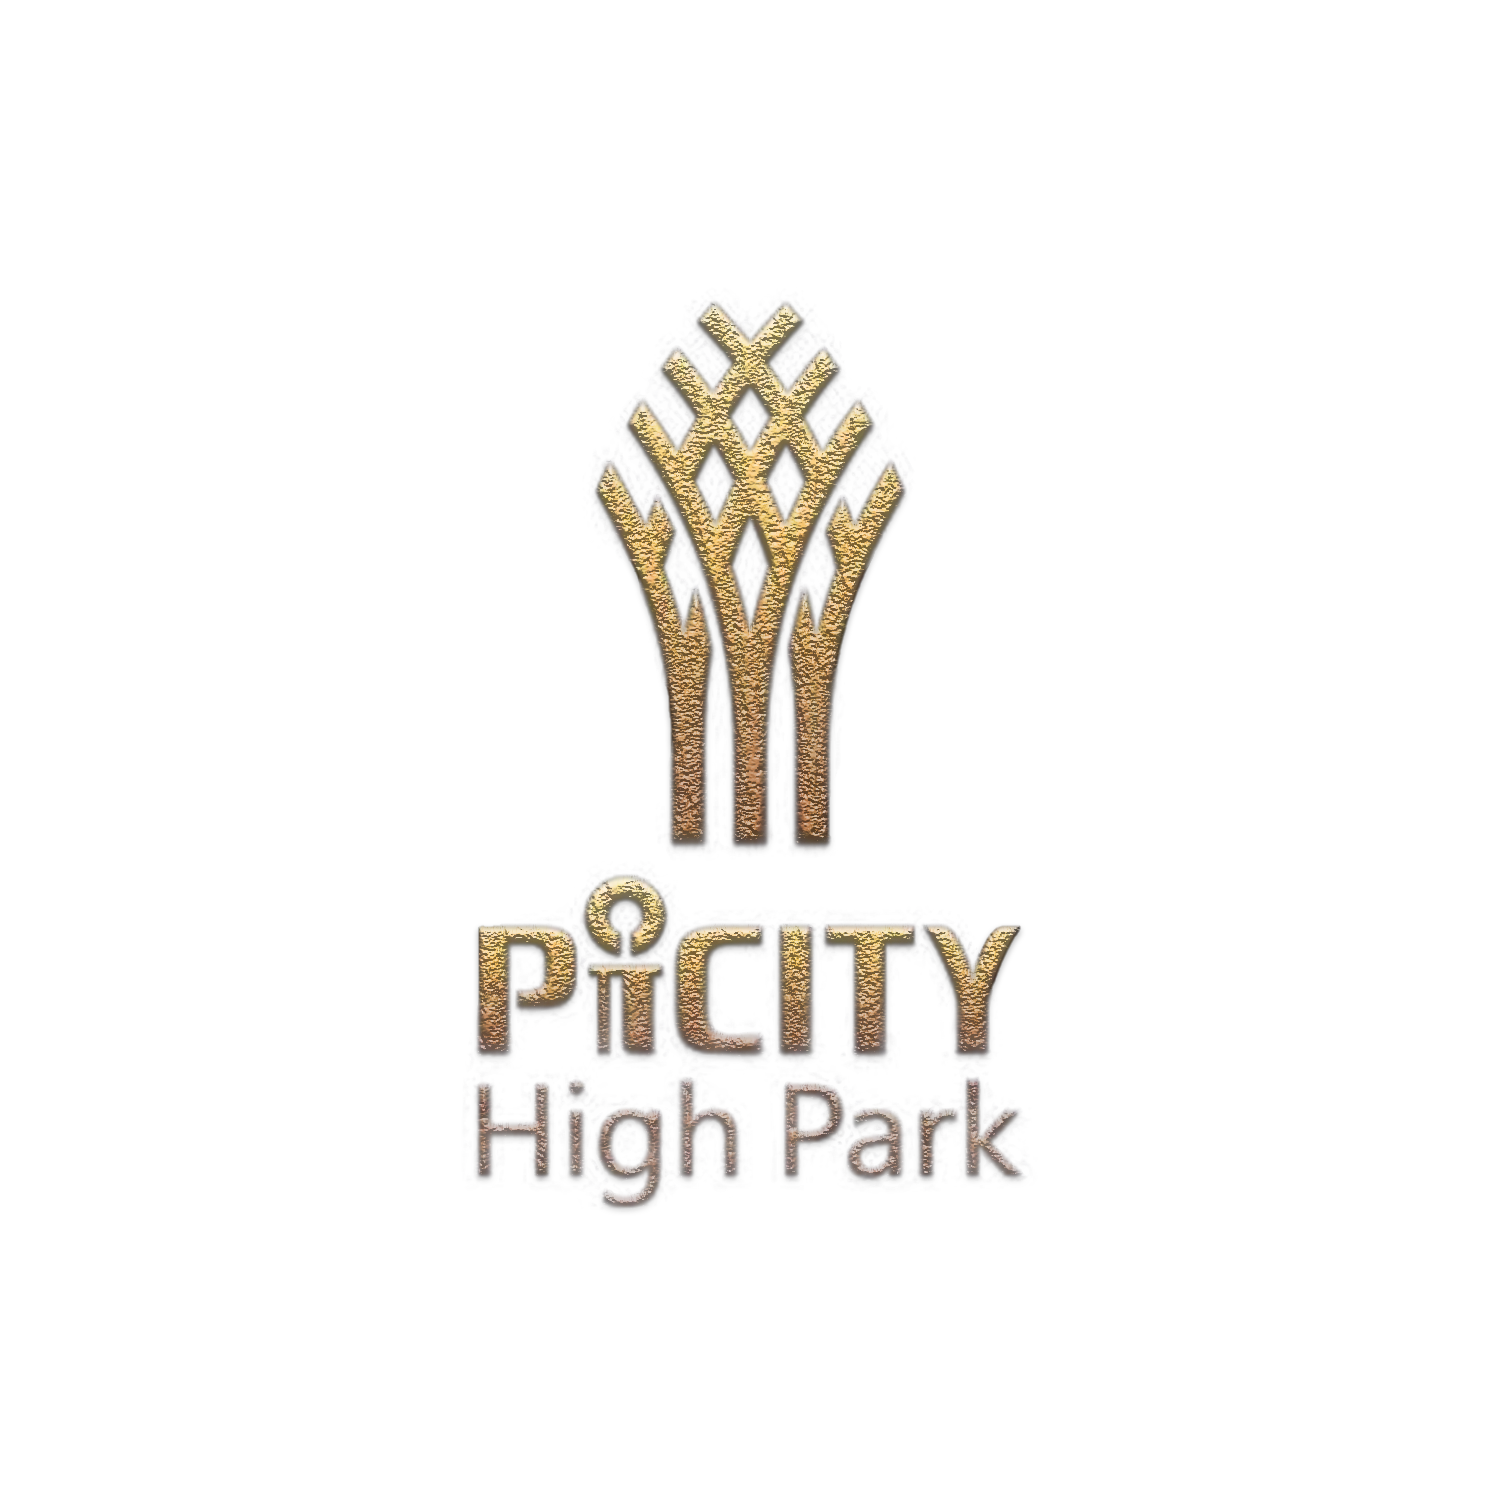 logo Picity High Park